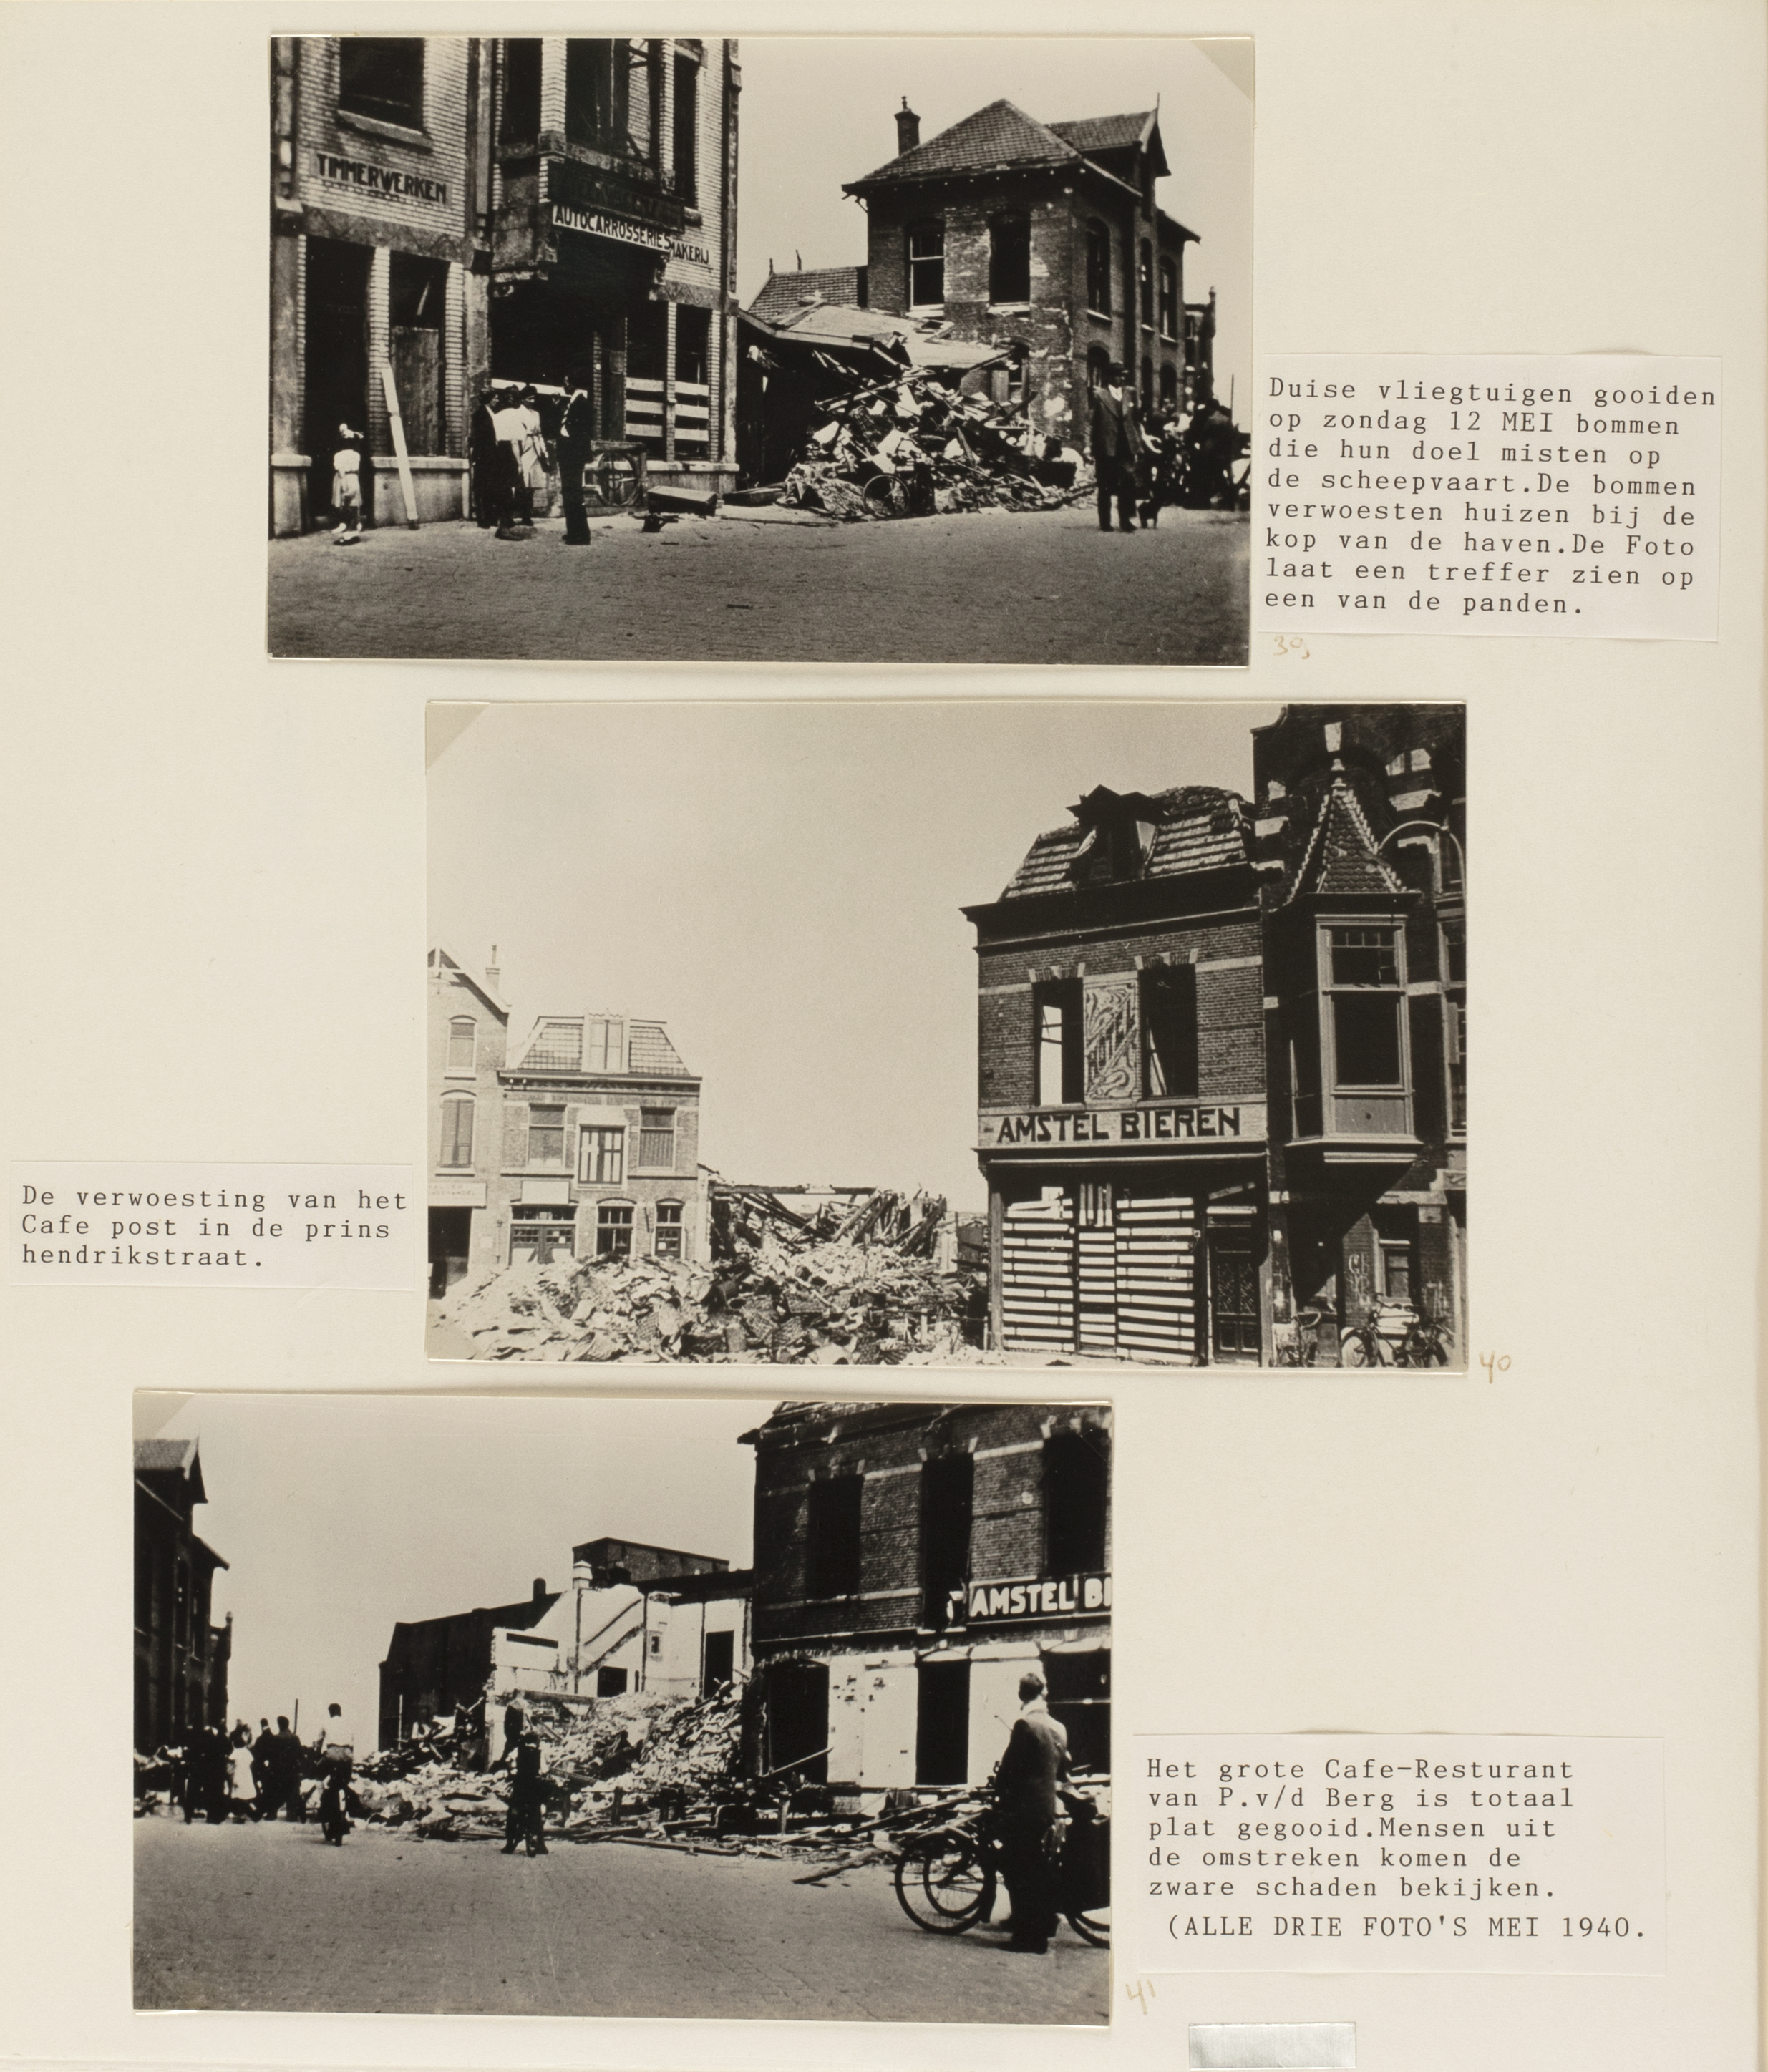 Pagina uit een fotoalbum met foto's van IJmuiden tijdens de Tweede Wereldoorlog